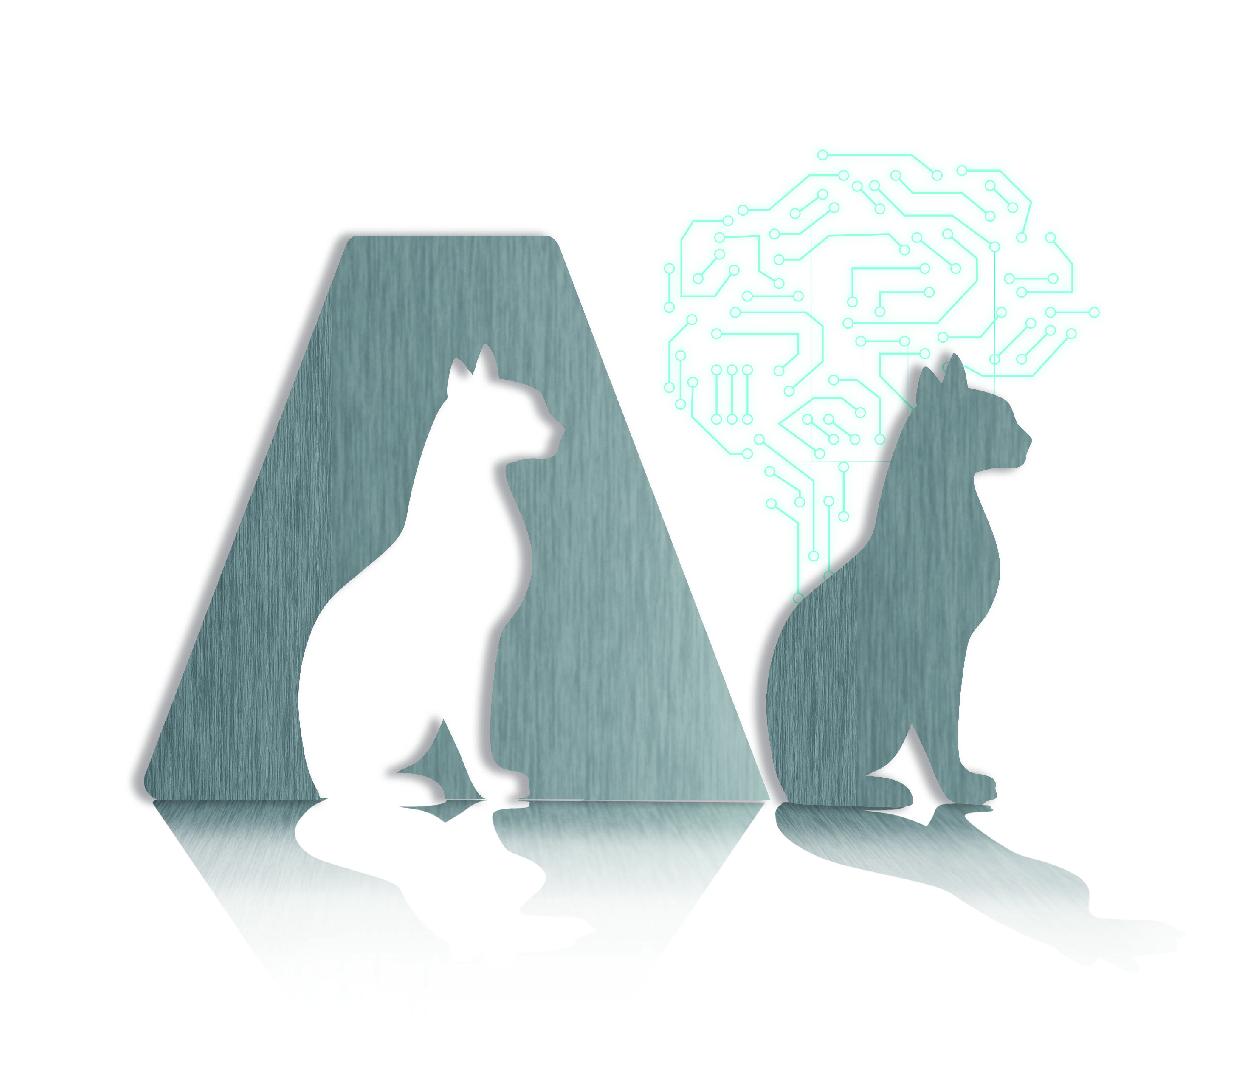 Inteligencia artificial en la industria de las mascotas